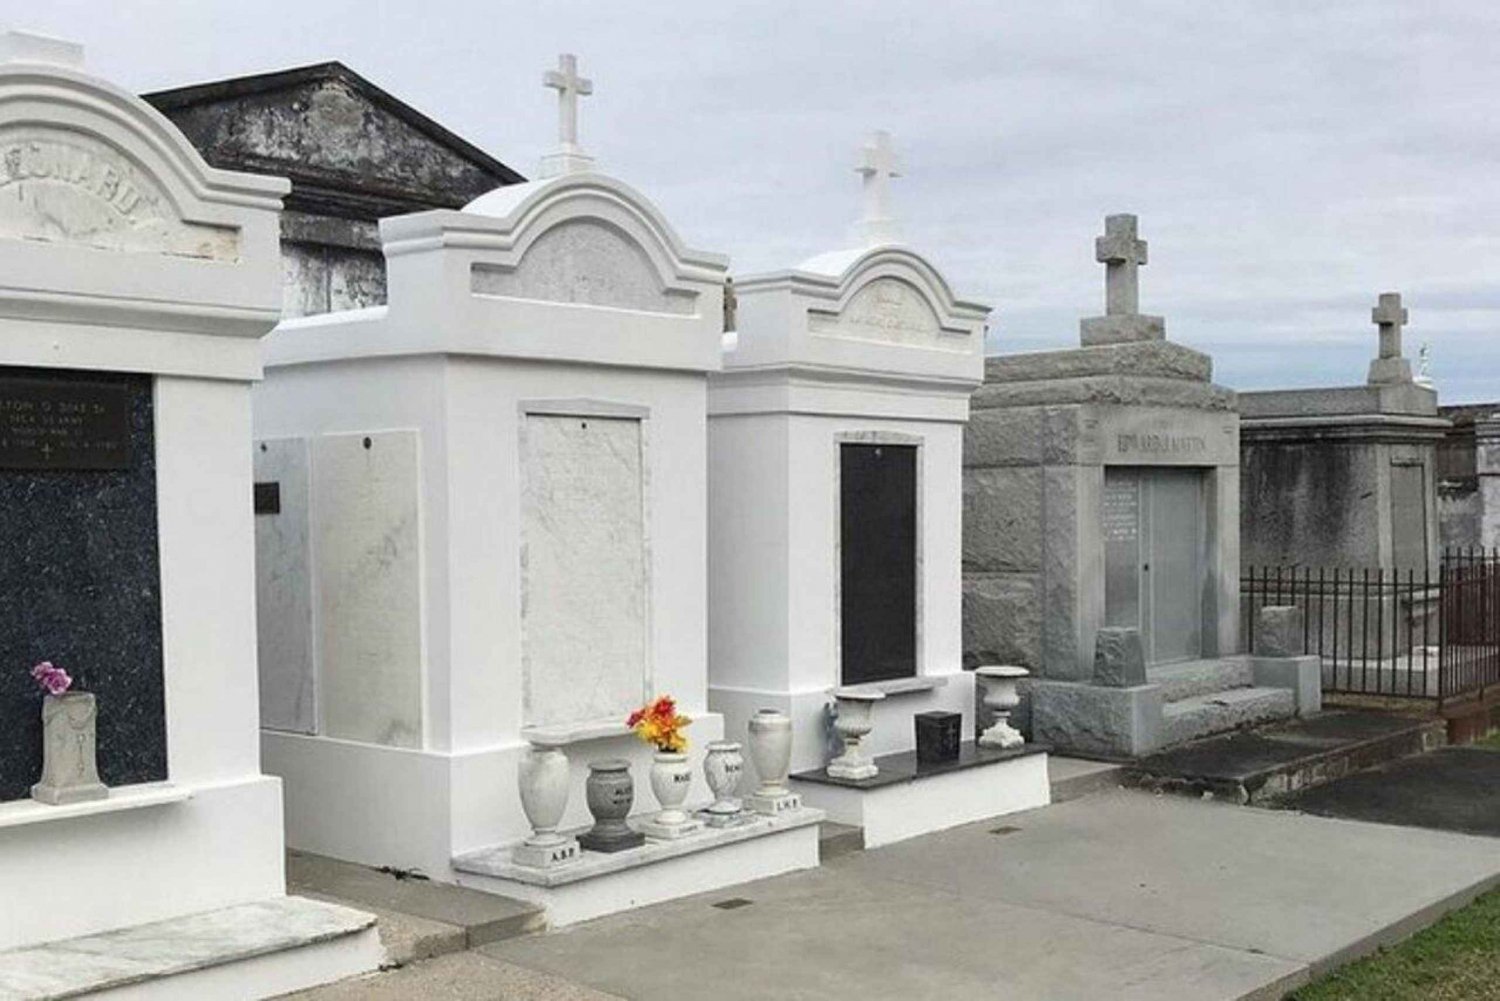 New Orleans: Sightseeingtur i staden och på kyrkogården